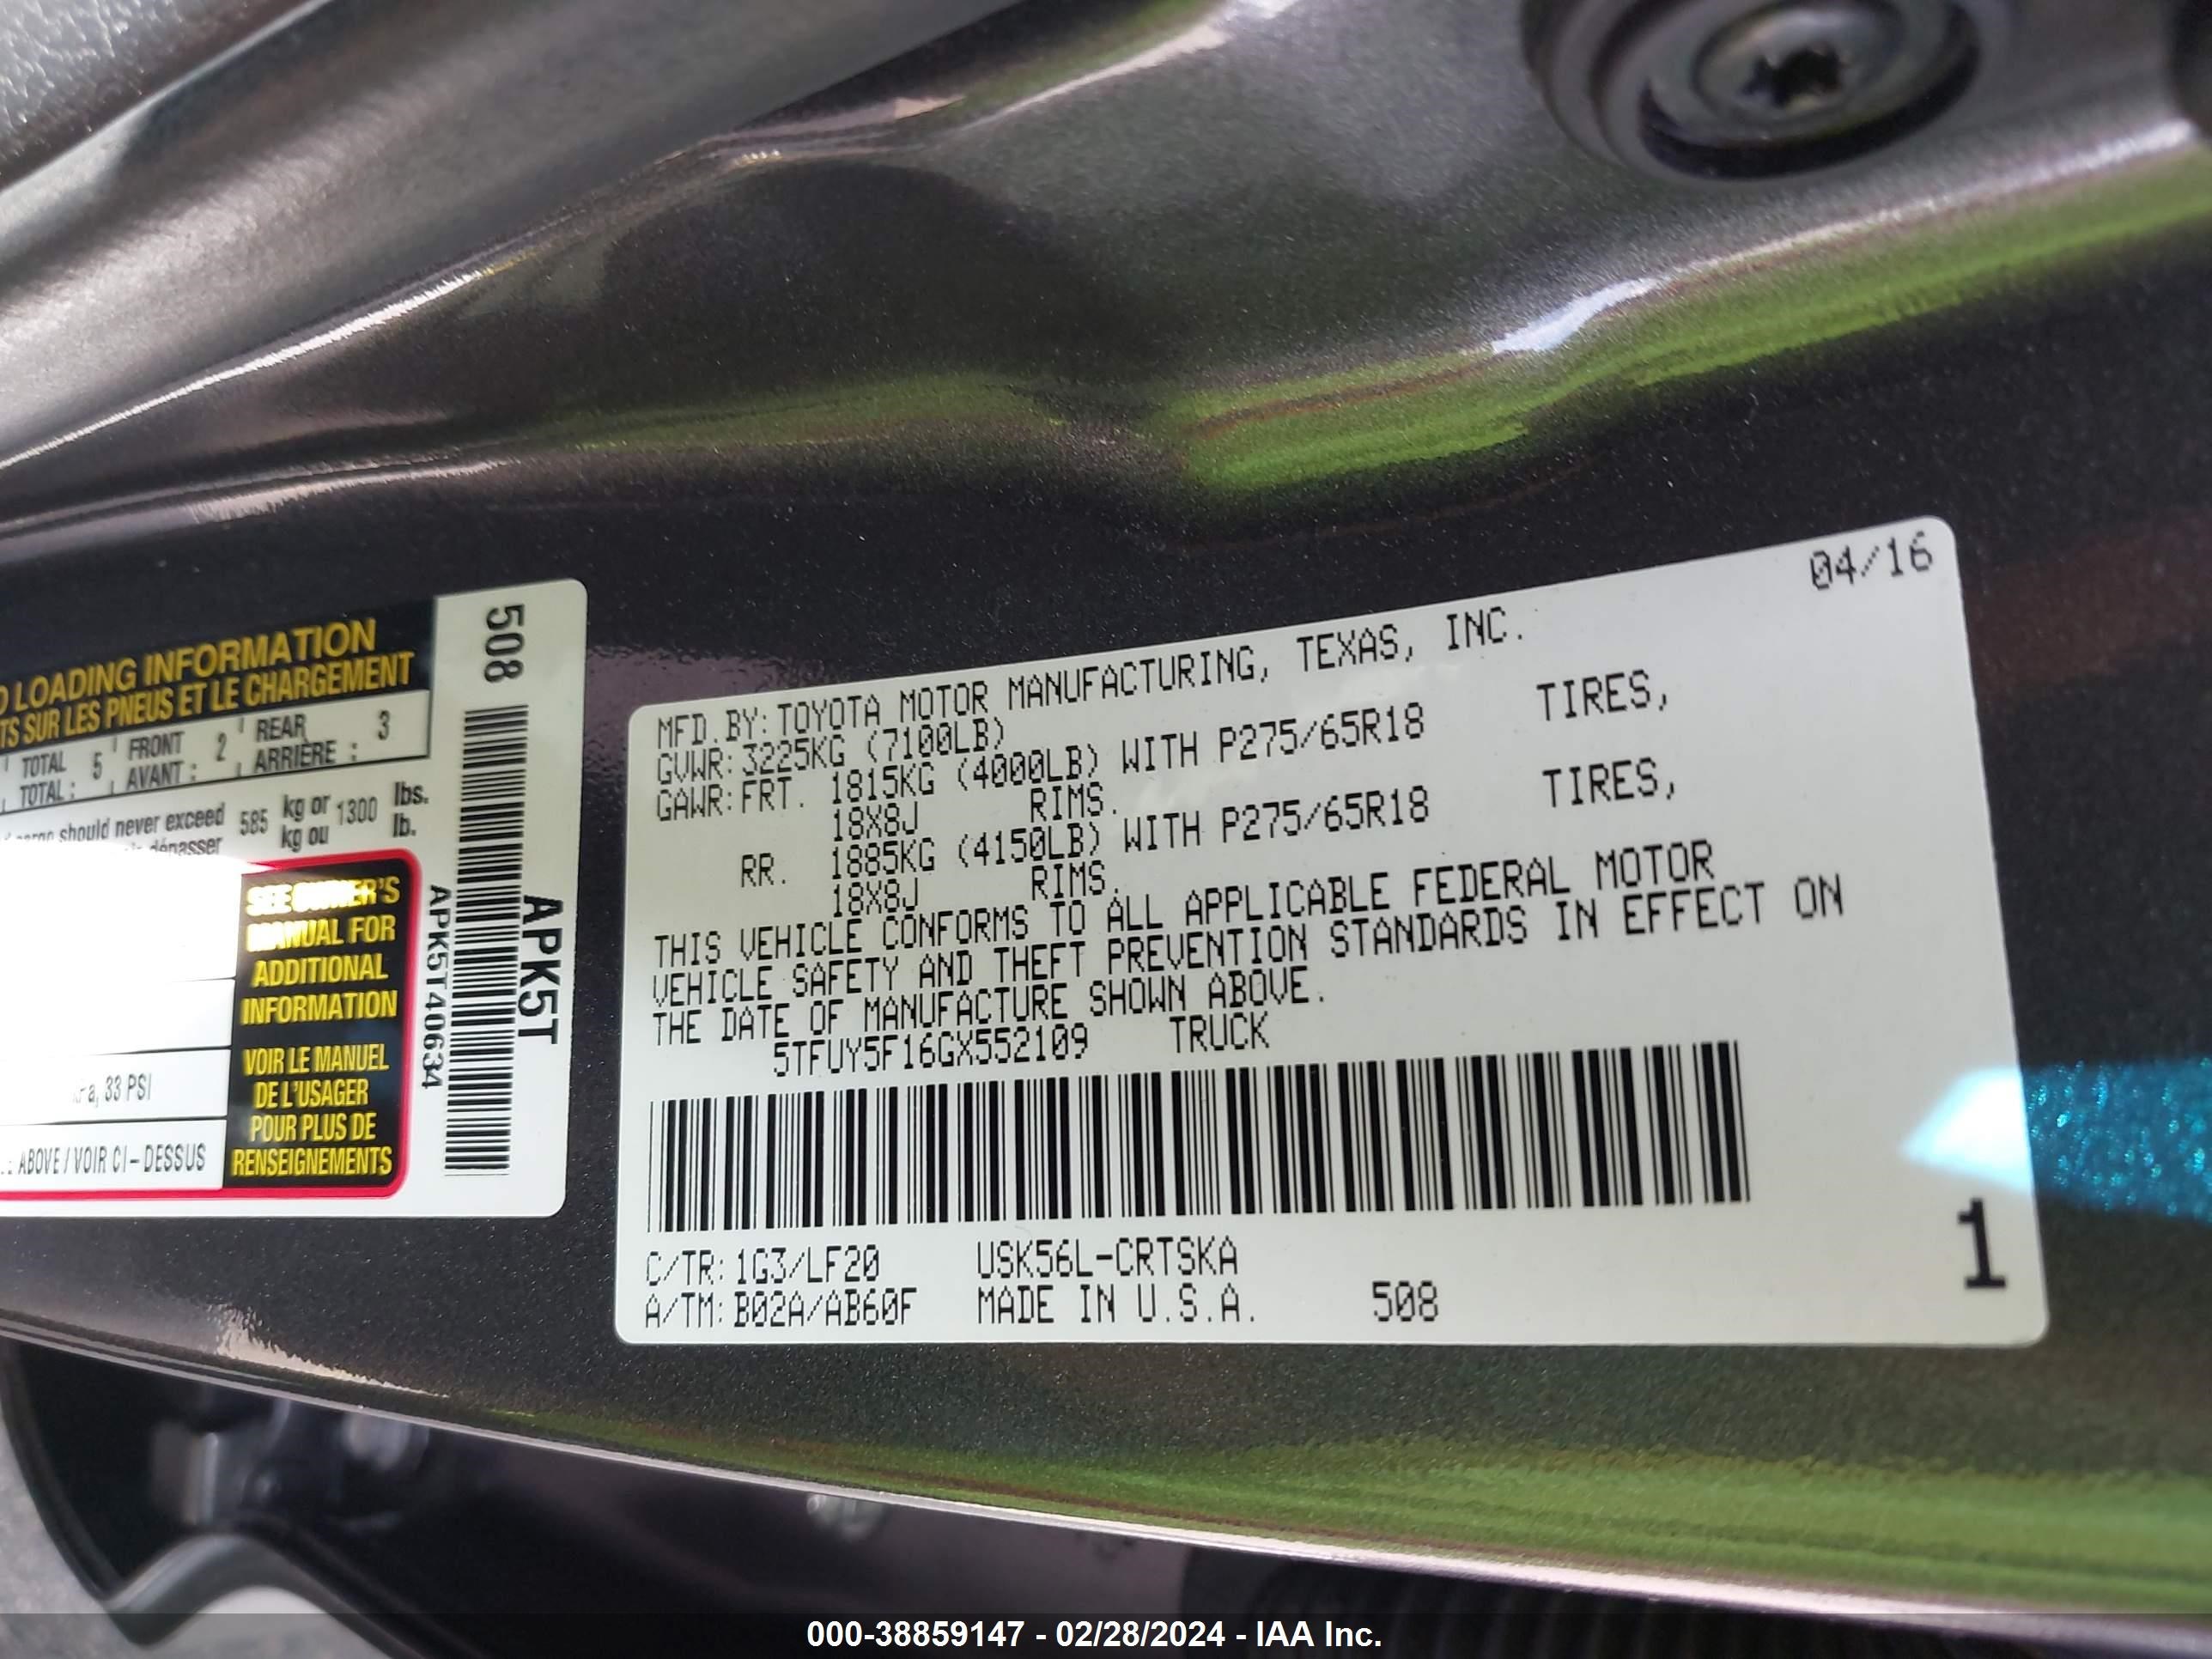 2016 Toyota Tundra Trd Pro 5.7L V8 vin: 5TFUY5F16GX552109